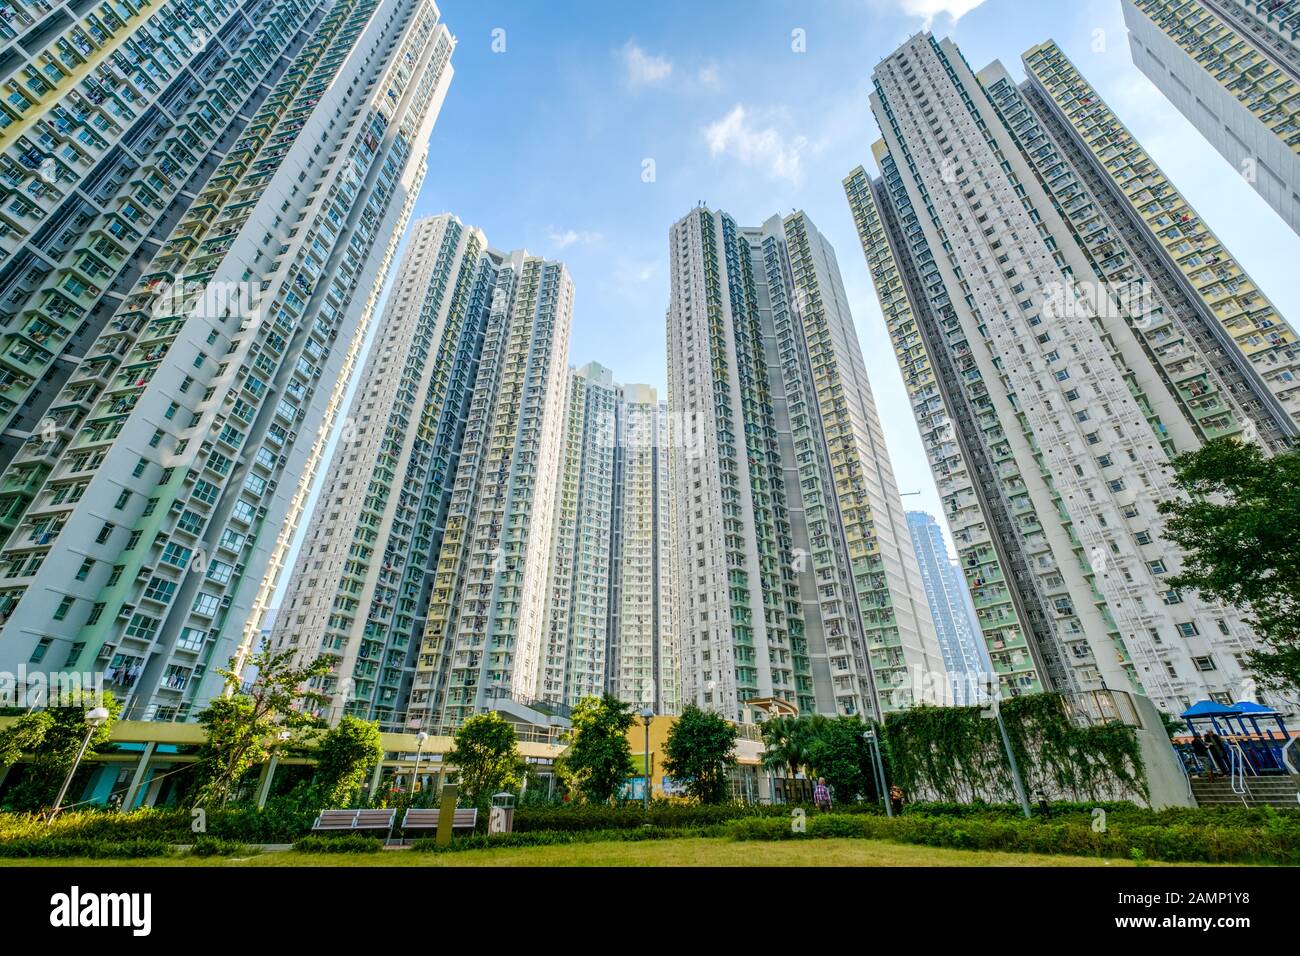 enorme complejo de edificios residenciales, edificios de apartamentos de gran altura con patio verde. Foto de stock